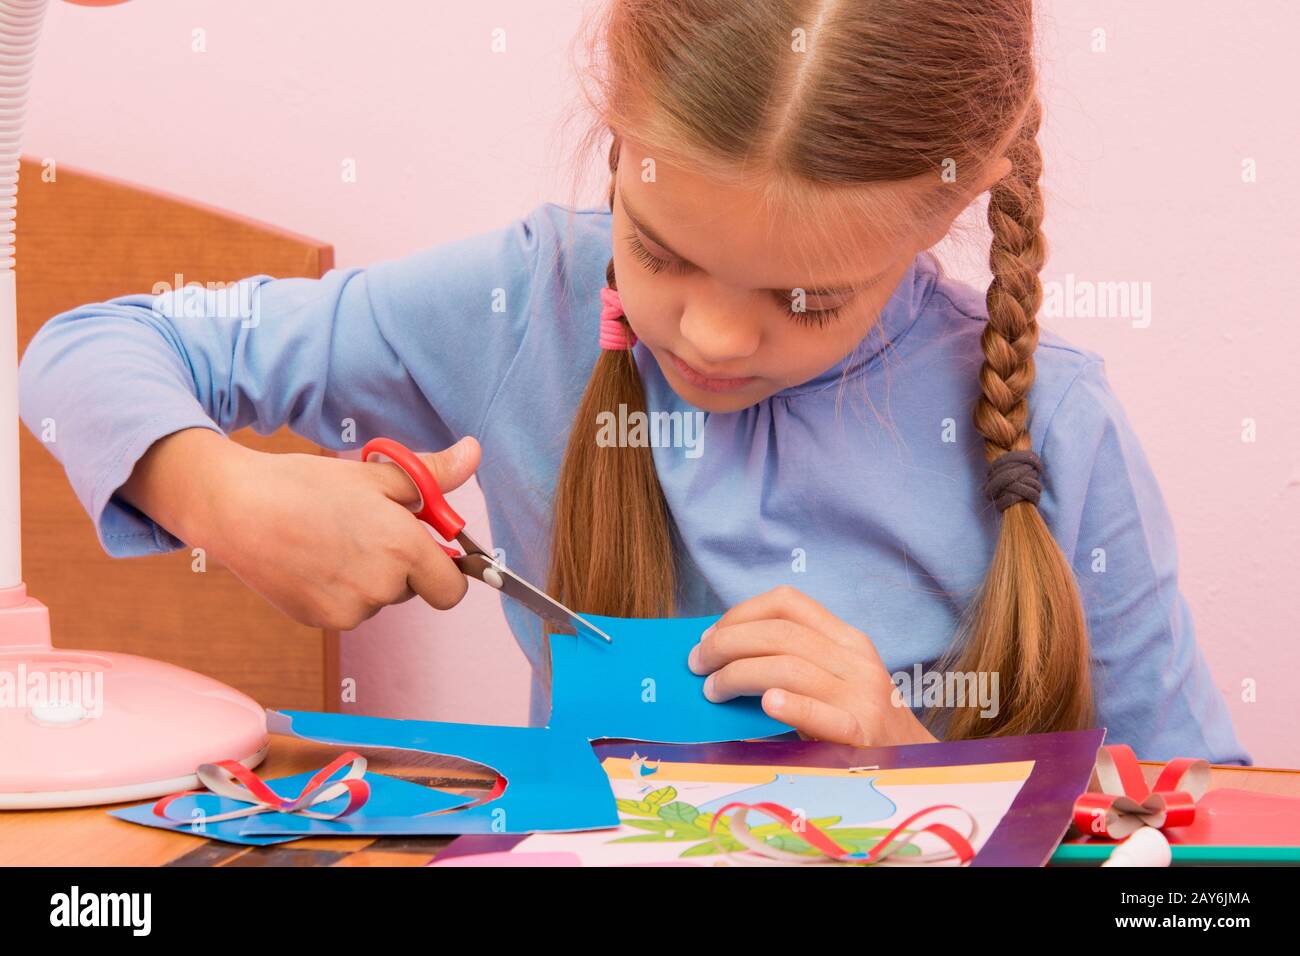 L'enfant se coupe un morceau de carton de couleur bleu Banque D'Images